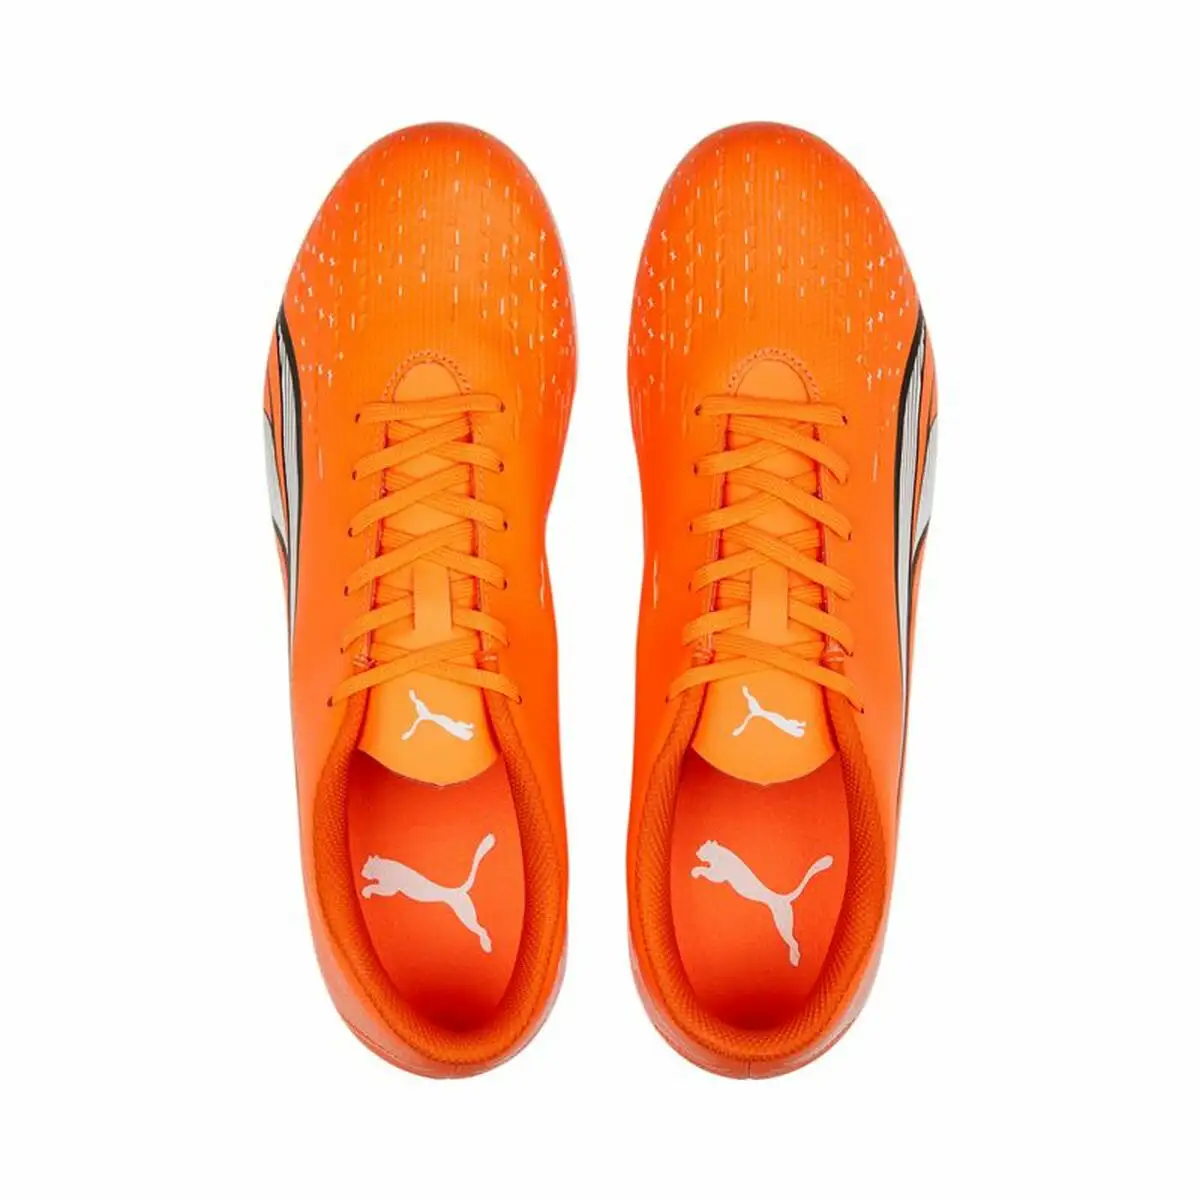 Chaussures de football pour adultes puma ultra play mg orange unisexe_8339. Bienvenue chez DIAYTAR SENEGAL - Votre Plateforme Shopping pour Tous. Découvrez un large éventail de produits qui célèbrent la diversité et la beauté du Sénégal.